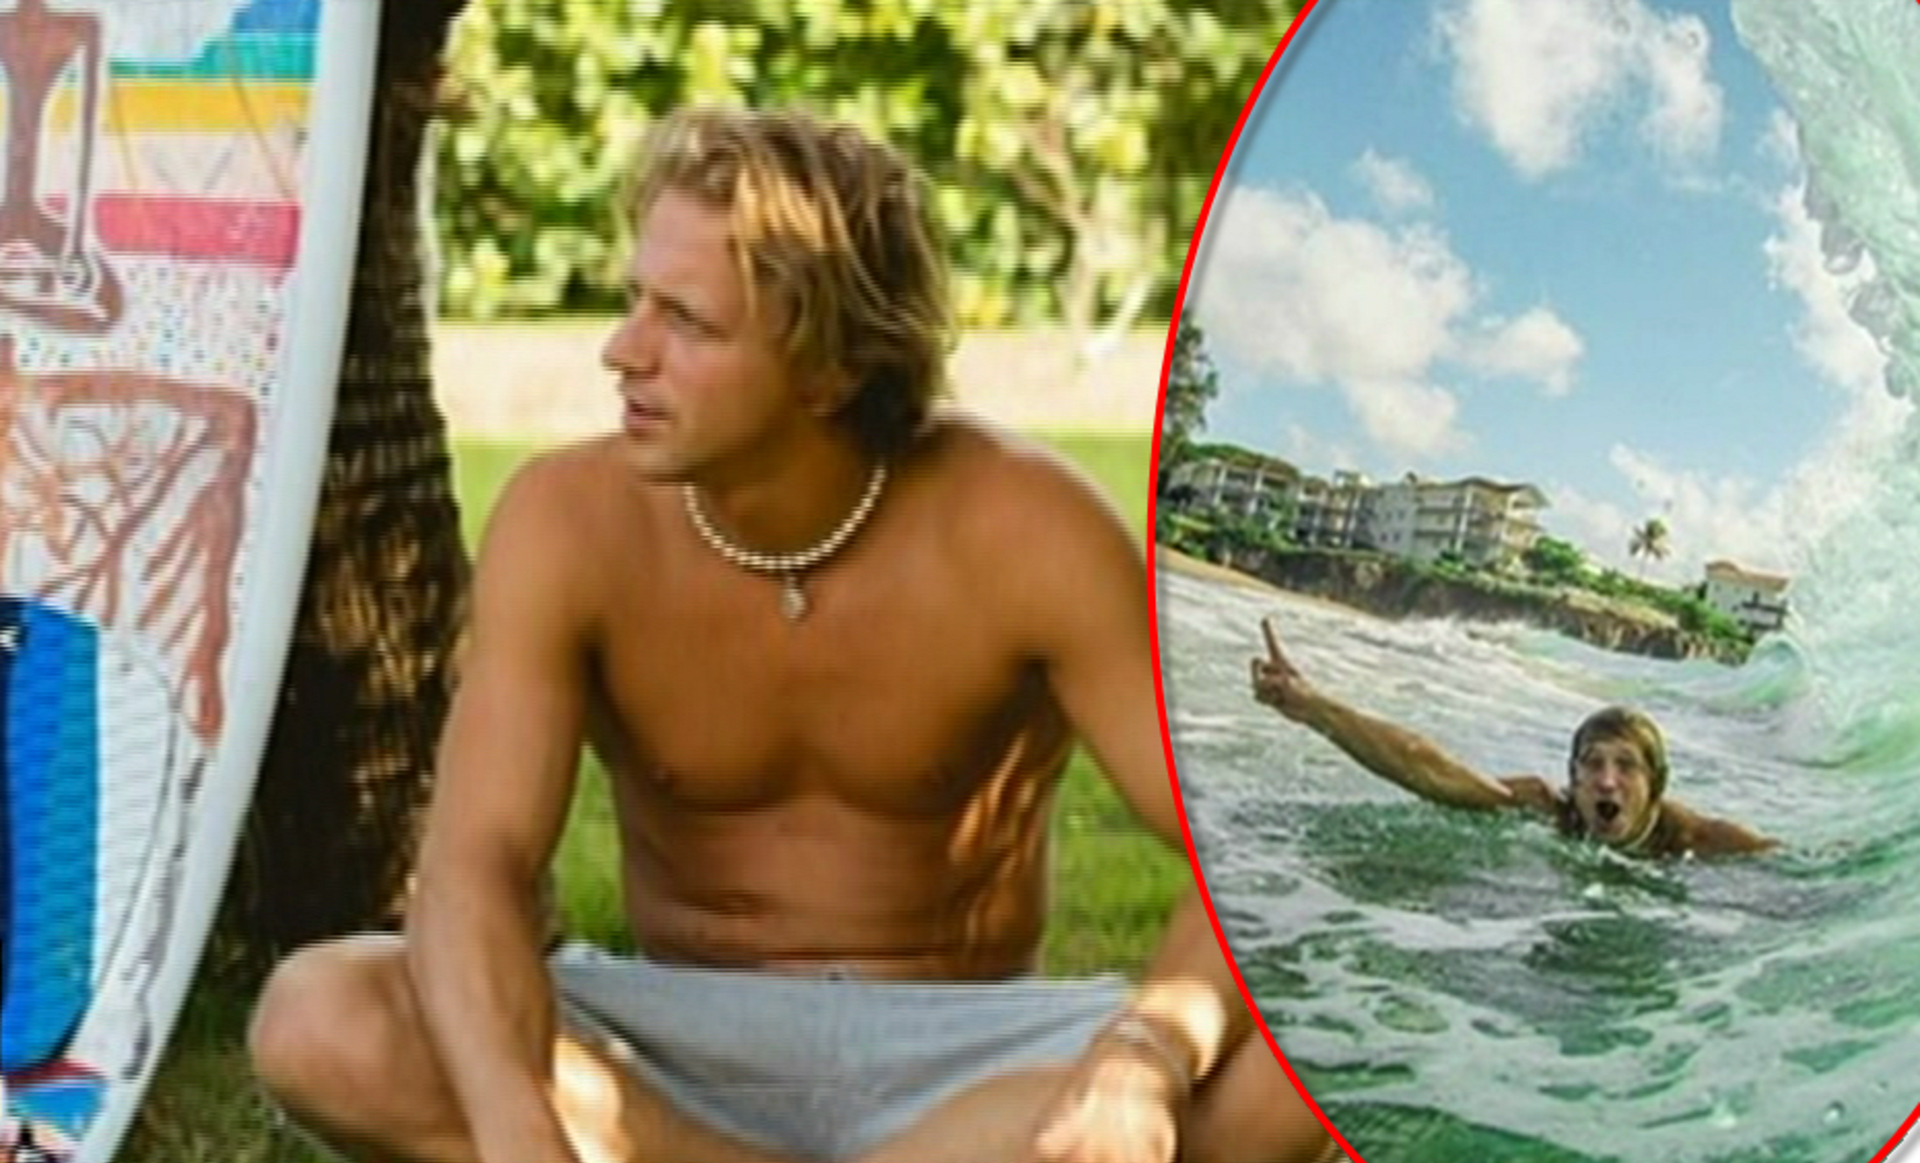 Video VIP zprávy: Podívejte se, jak se měl Tomáš Klus při svém tříměsíčním pobytu na Bali